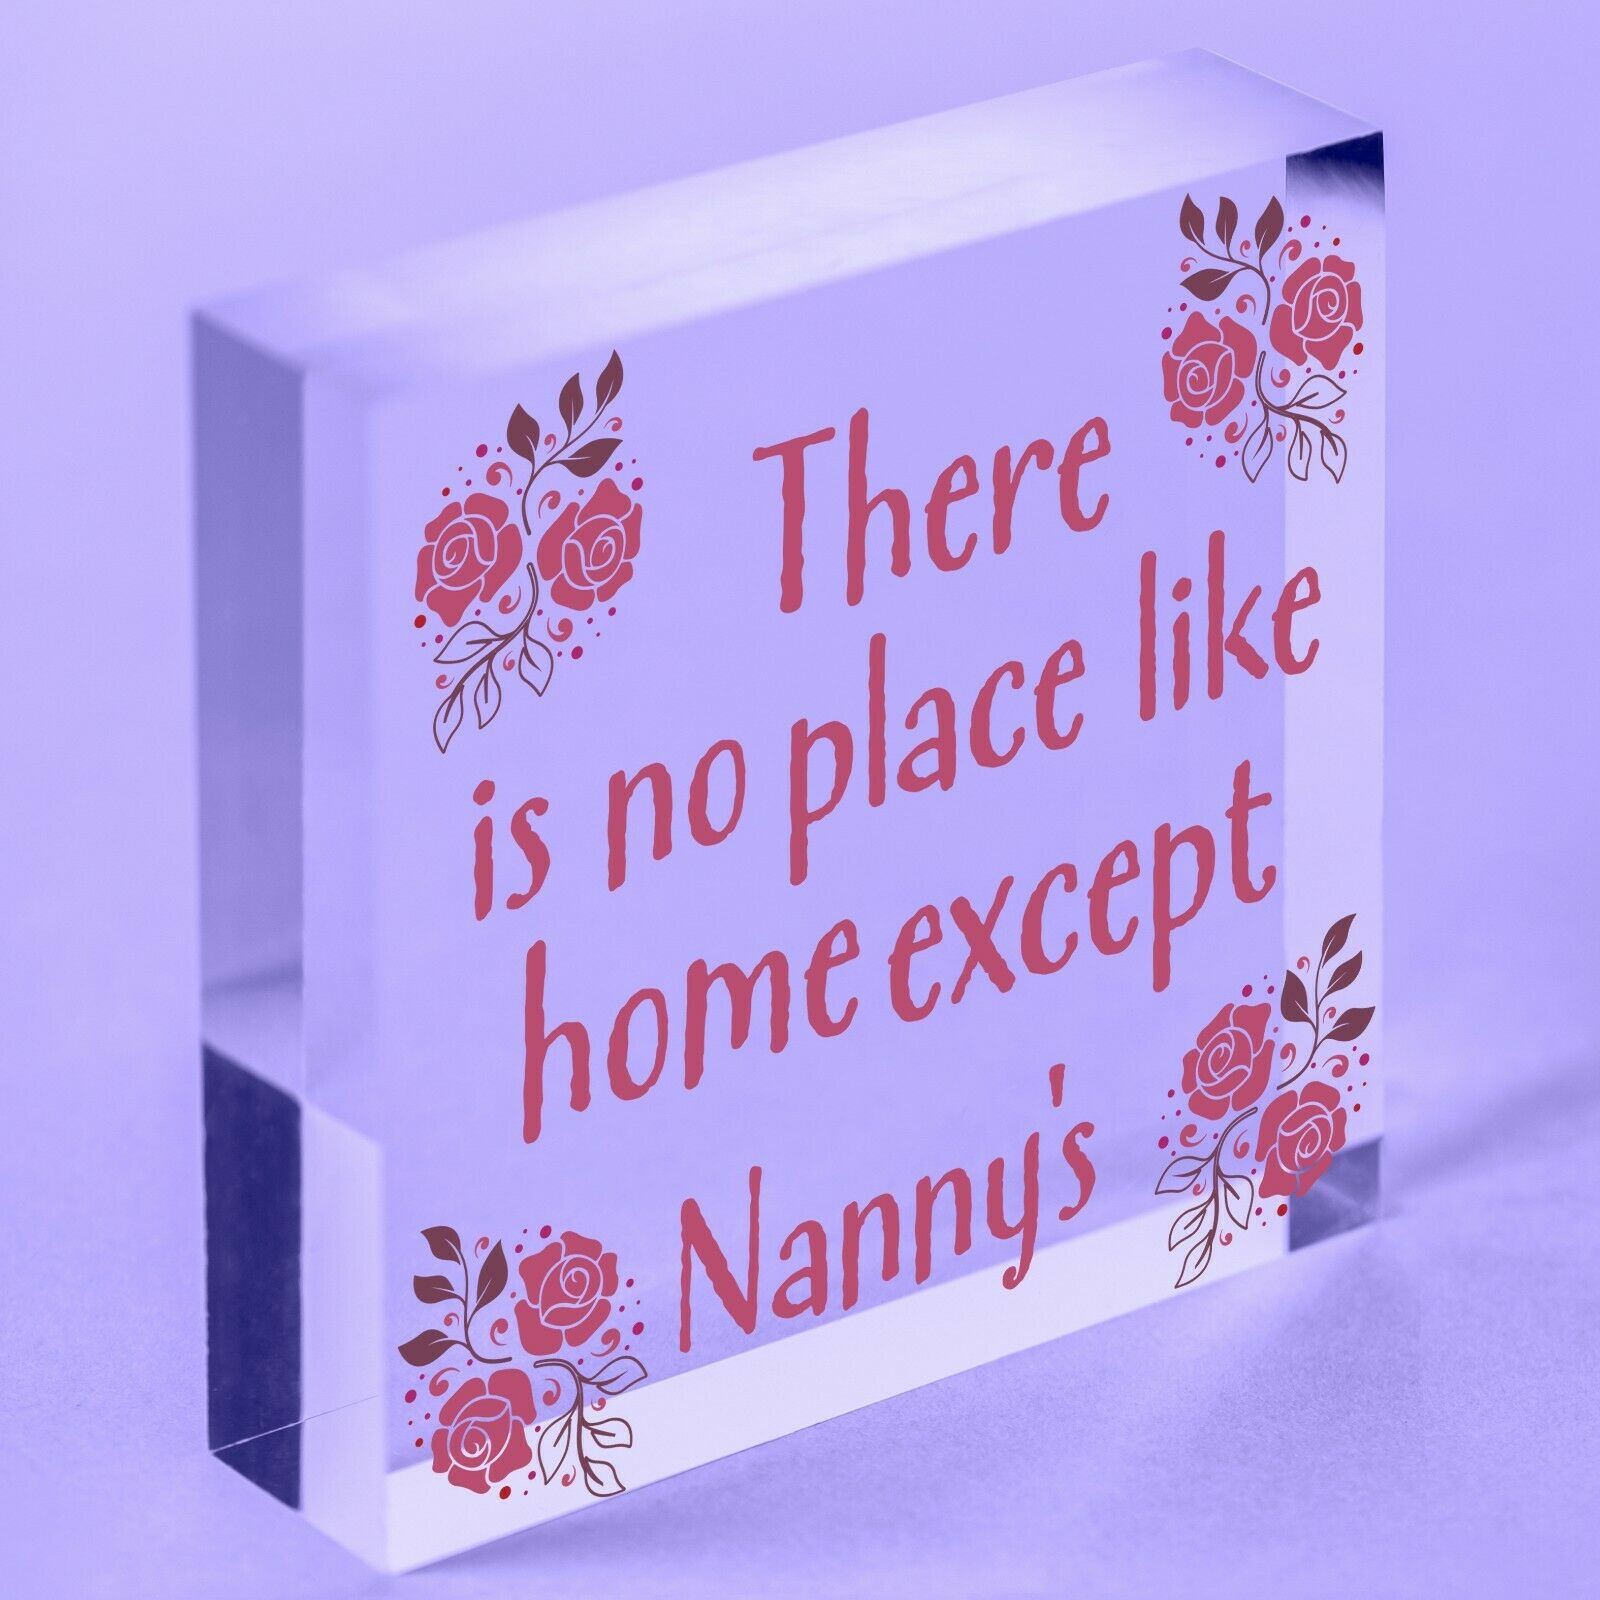 Nanny Nan Christmas Birthday Gifts Hanging Acrylic Block Sign Xmas Home Keepsake